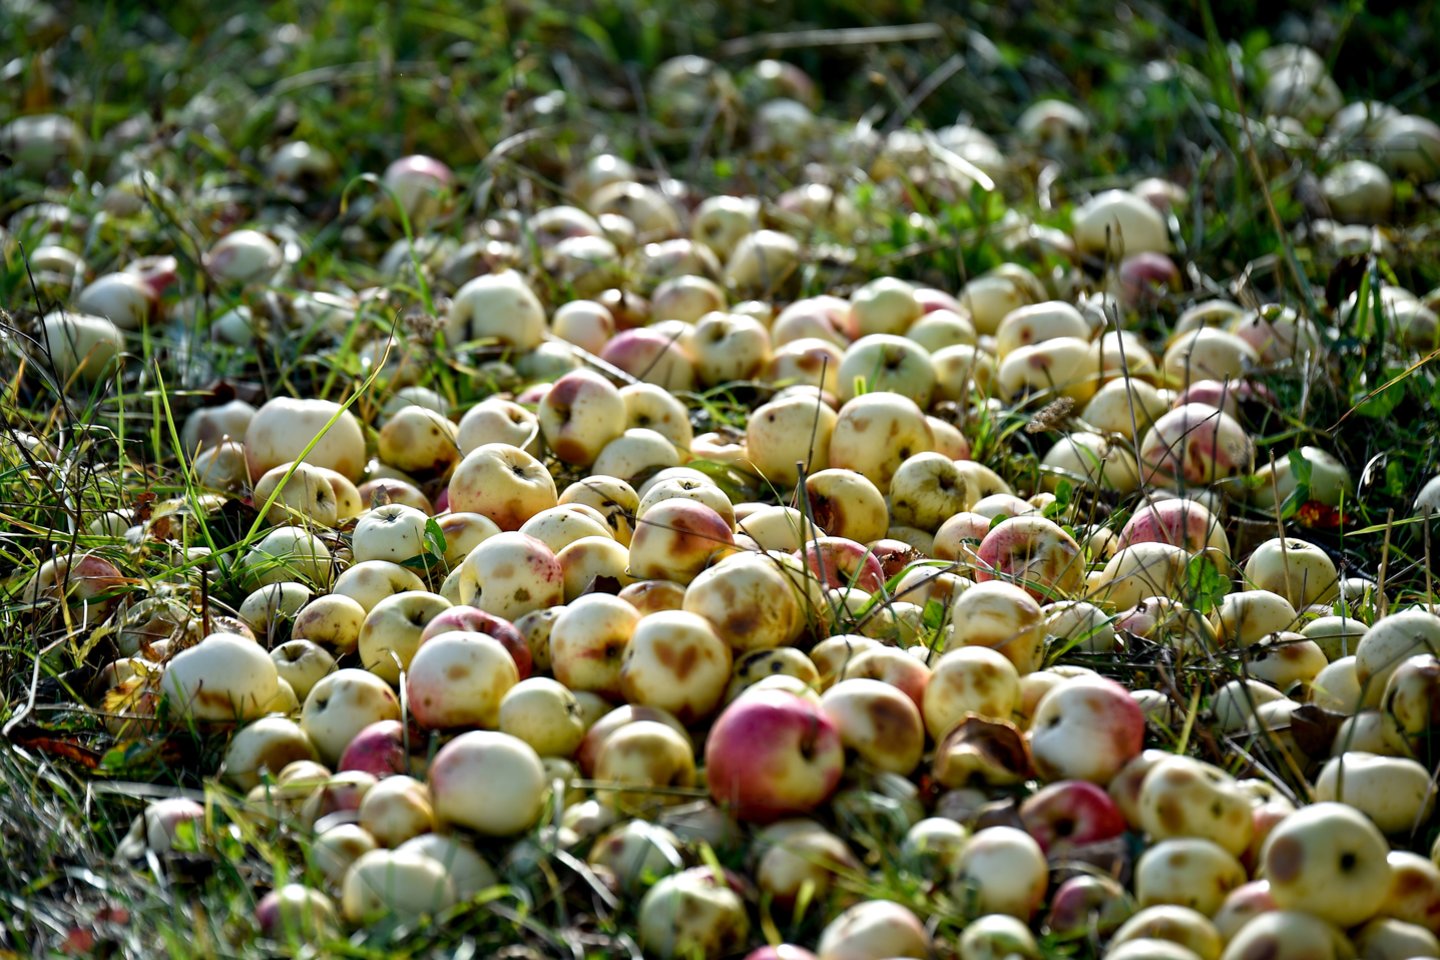 Prekybininkai kalbėjo, kad šiuo metu obuoliai yra pati populiariausia ūkininkų turgelio prekė. <br>V.Ščiavinsko nuotr.